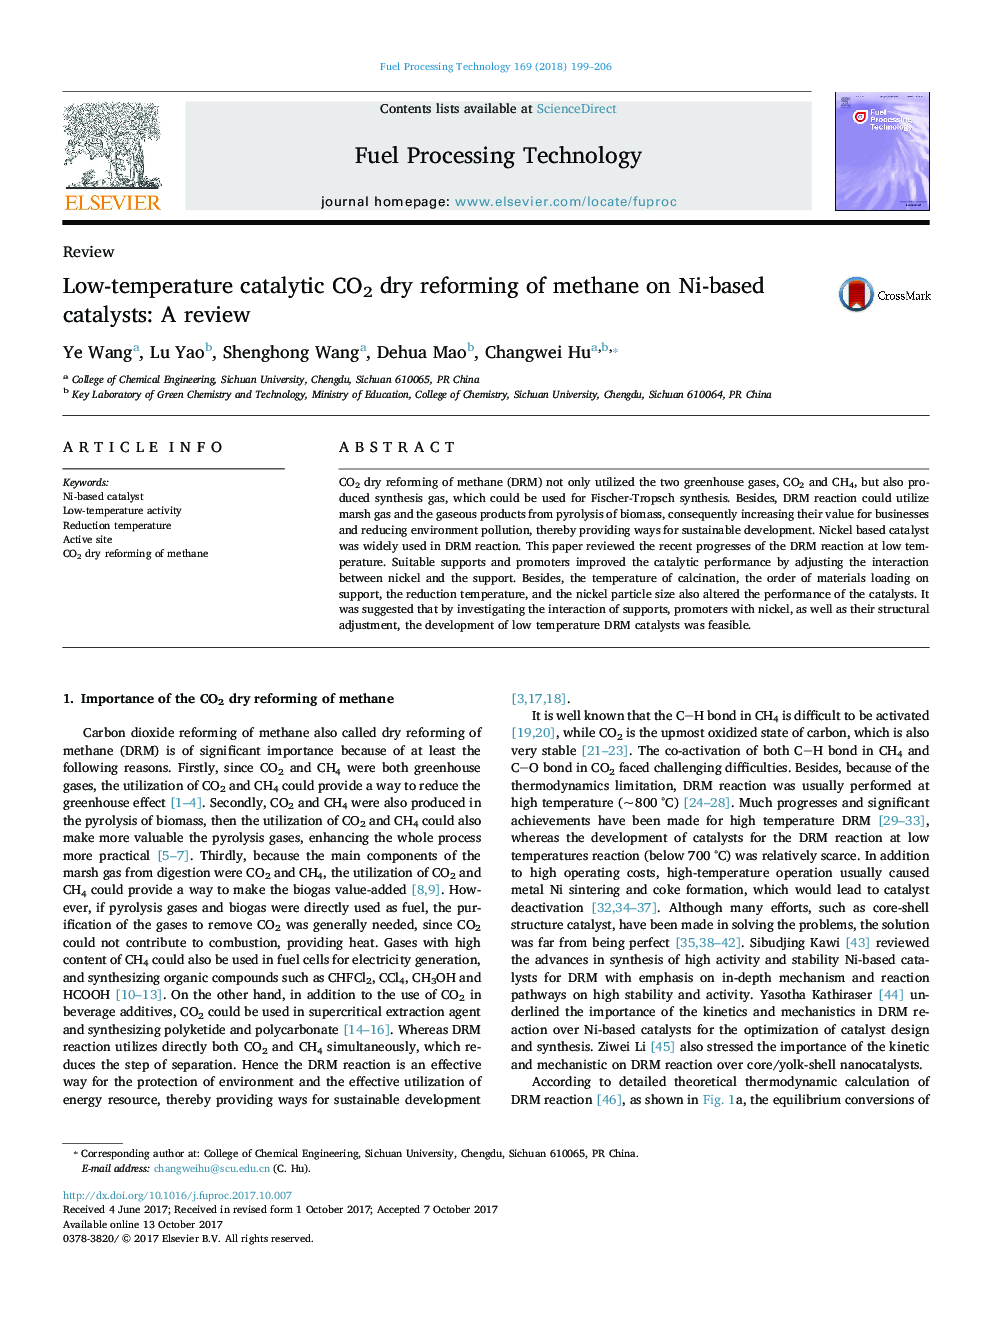 رفرمینگ خشک CO2 کاتالیزور در دمای پایین متان بر روی ککاتالیزورهای مبتنی بر نیکل: بررسی